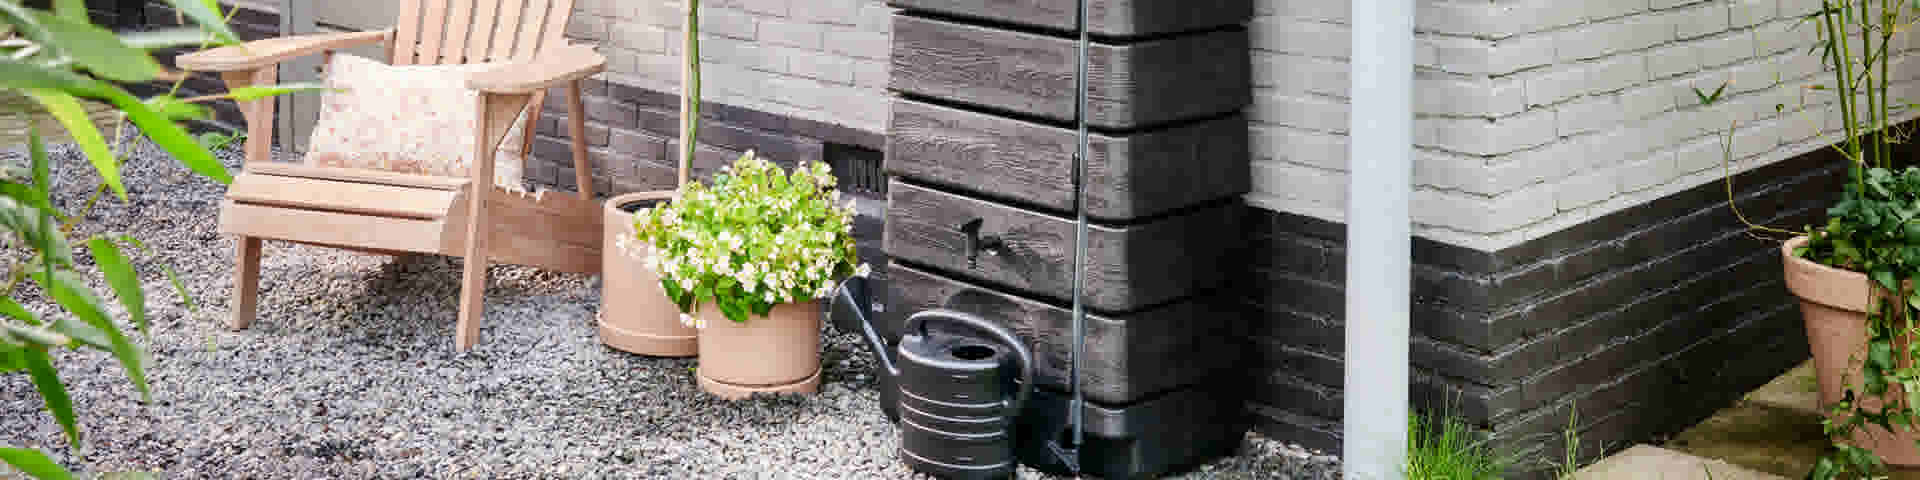 Récupérer l’eau de pluie pour rendre votre jardin plus durable